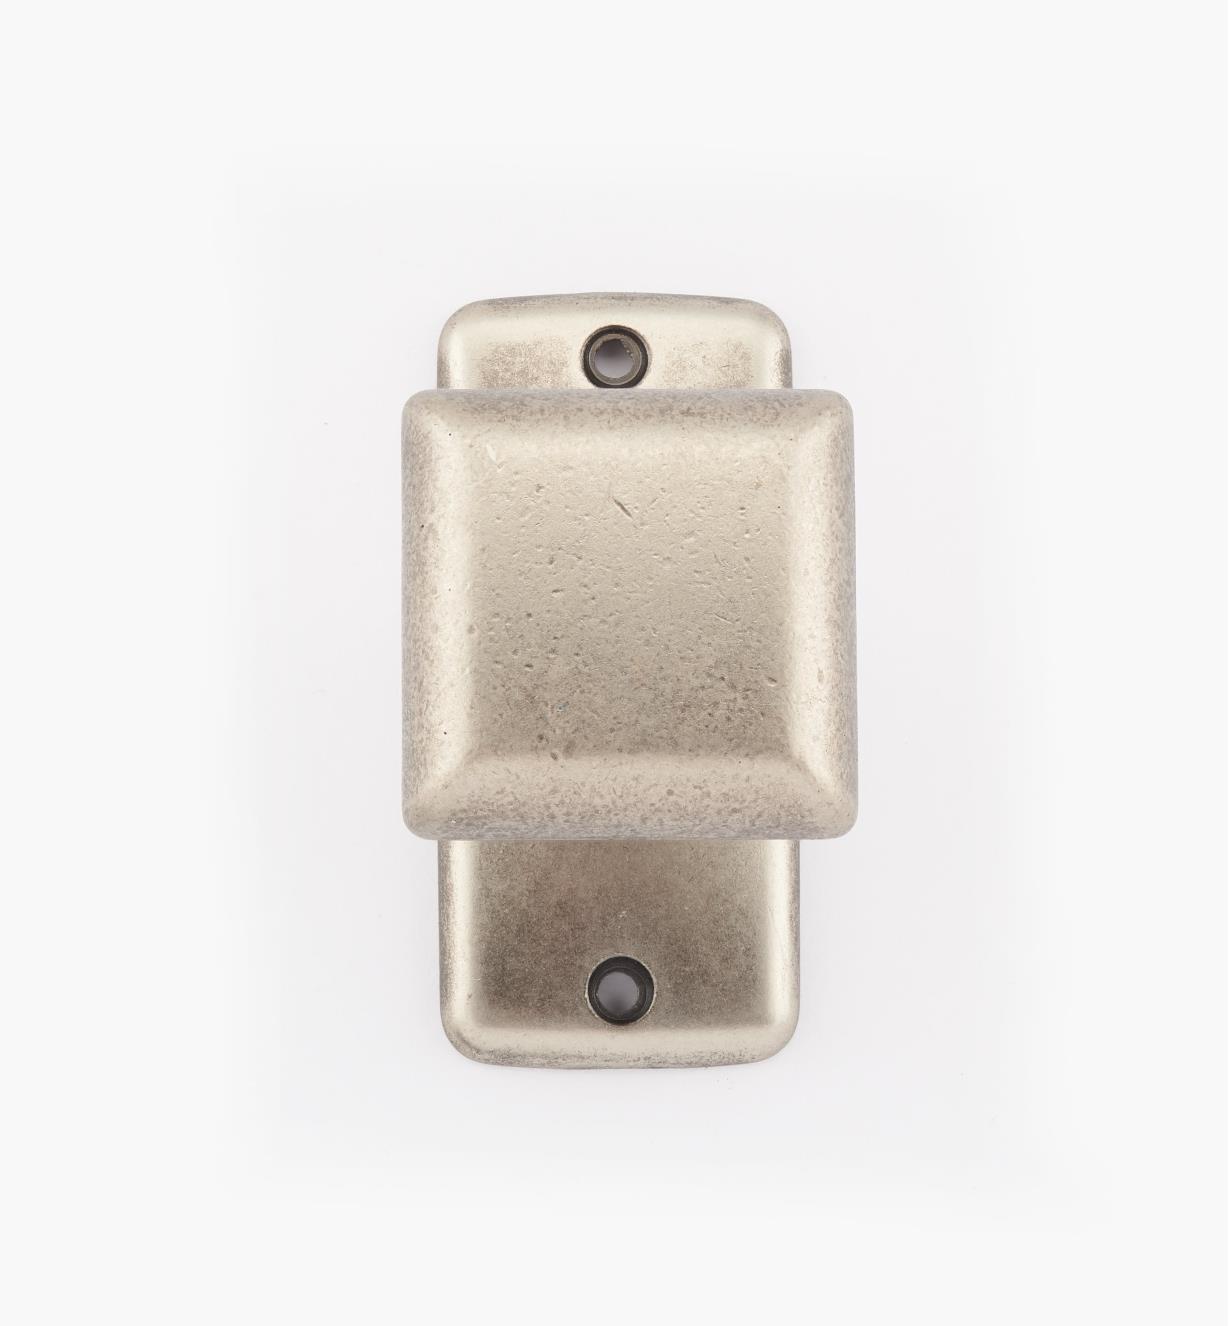 01X4014 - Bouton carré sur platine classique, fini étain, 45 mm x 25 mm x 27 mm